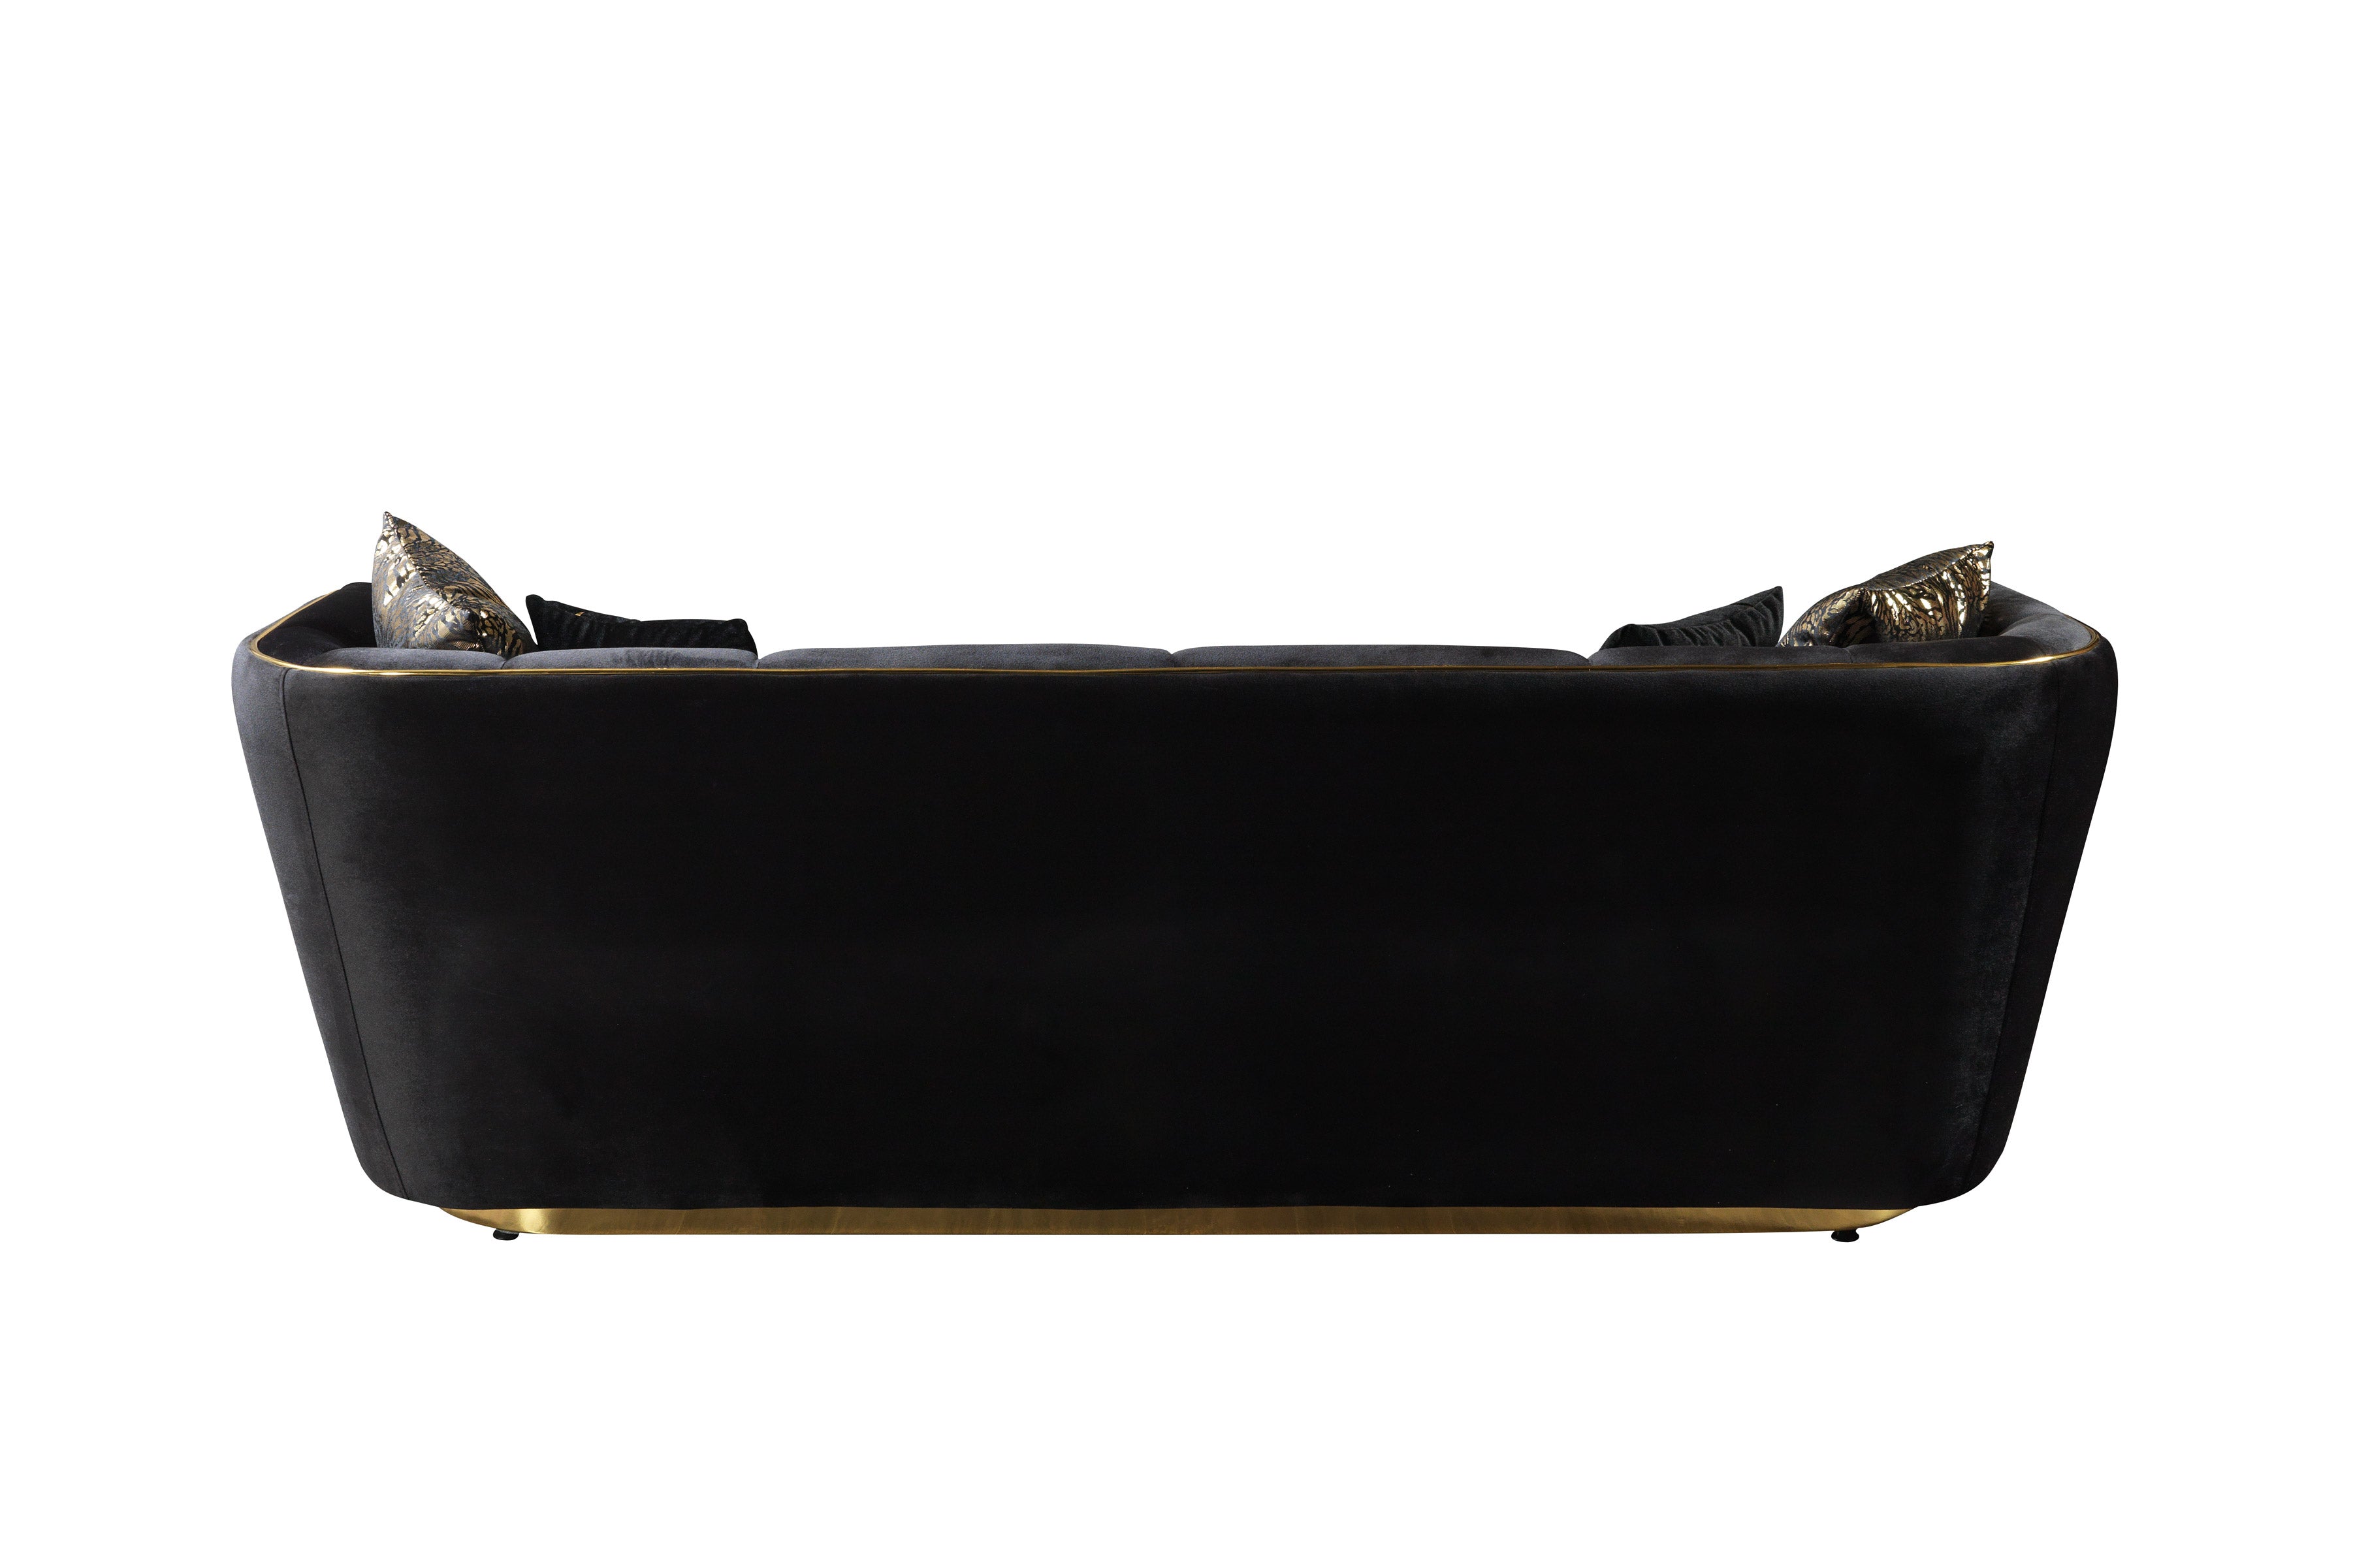 Daphne Black Velvet Sofa &amp; Loveseat - DAPHNE SL-BLACK - Bien Home Furniture &amp; Electronics